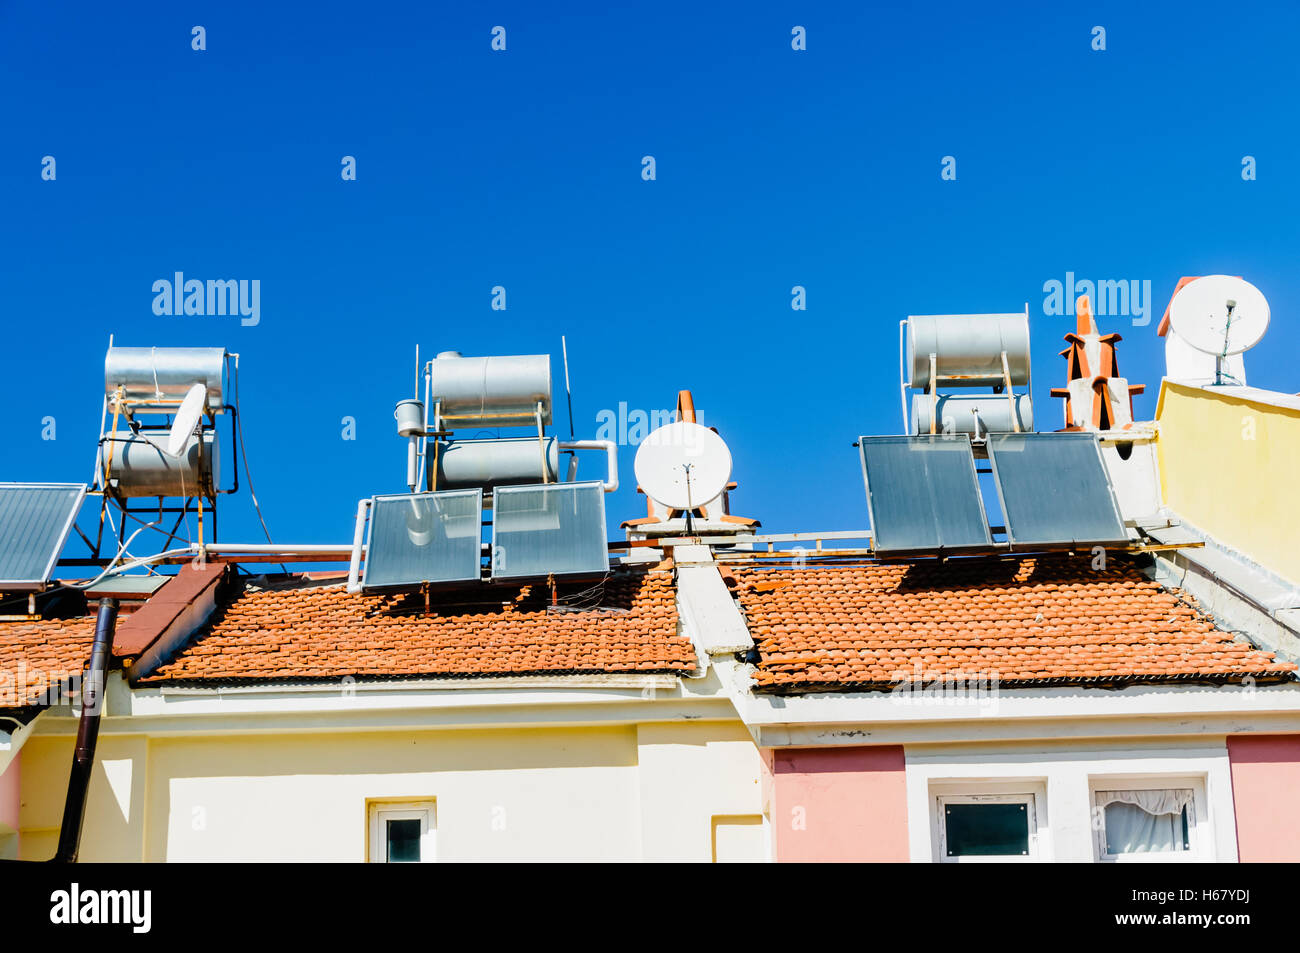 Solare Wasser-Heizungen und Satellitenschüsseln auf dem Dach eines Gebäudes in einem heißen Klima. Stockfoto